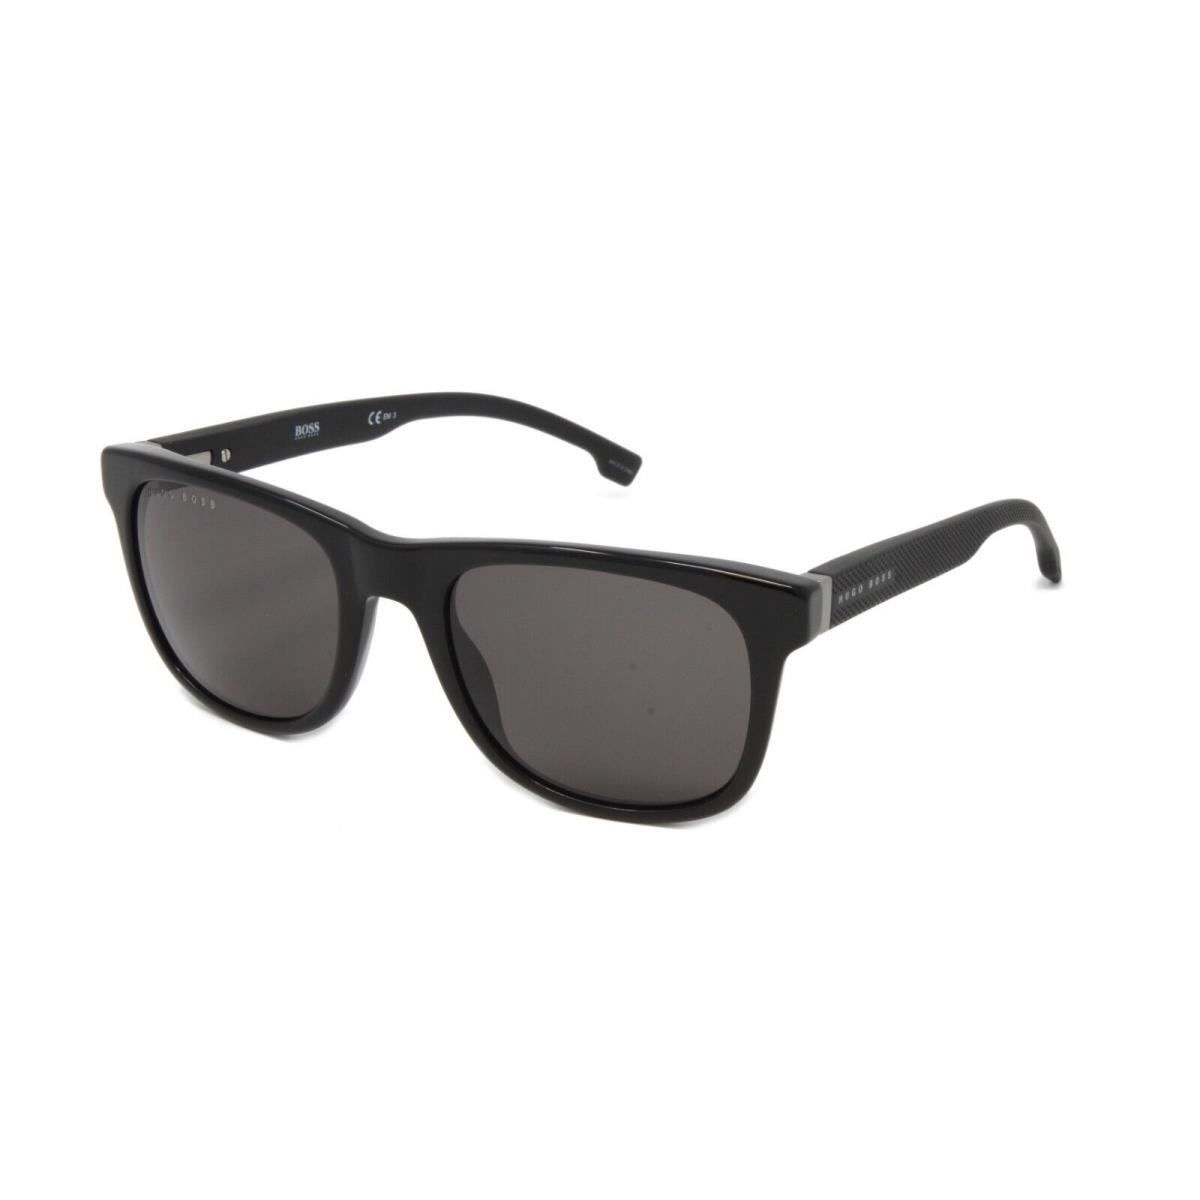 Boss Hugo Boss Sunglasses Men`s Square 1039S 807 Black 53mm Grey Lens - Black Frame, Gray Lens